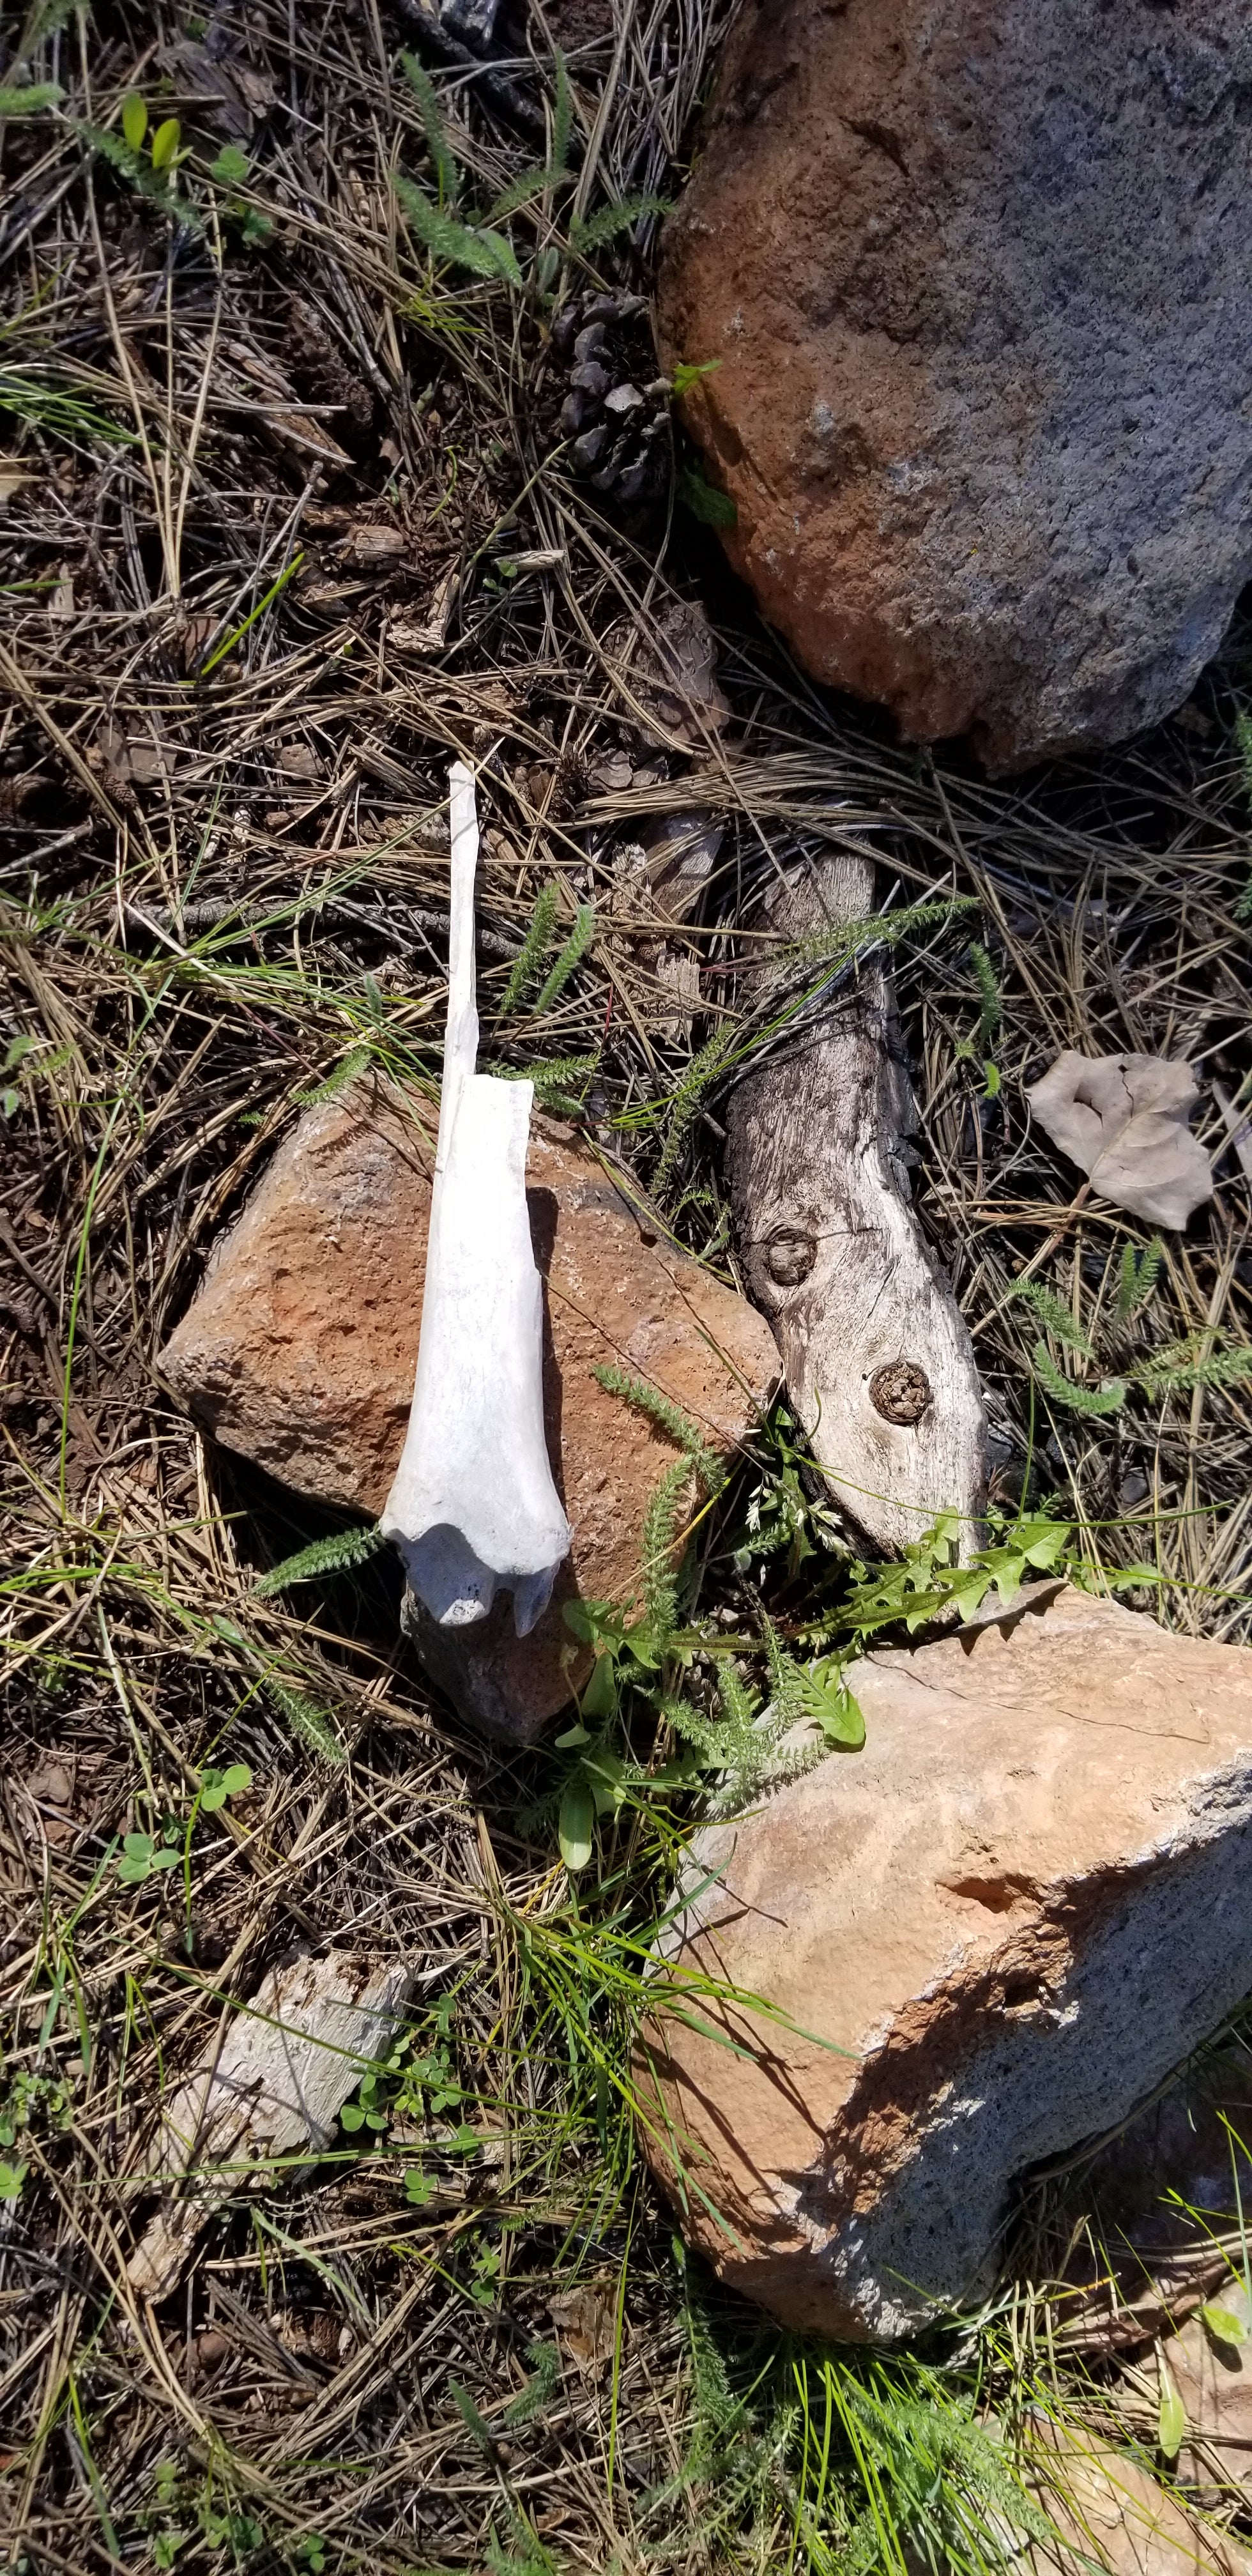 Found a bone, hoping it was animal.